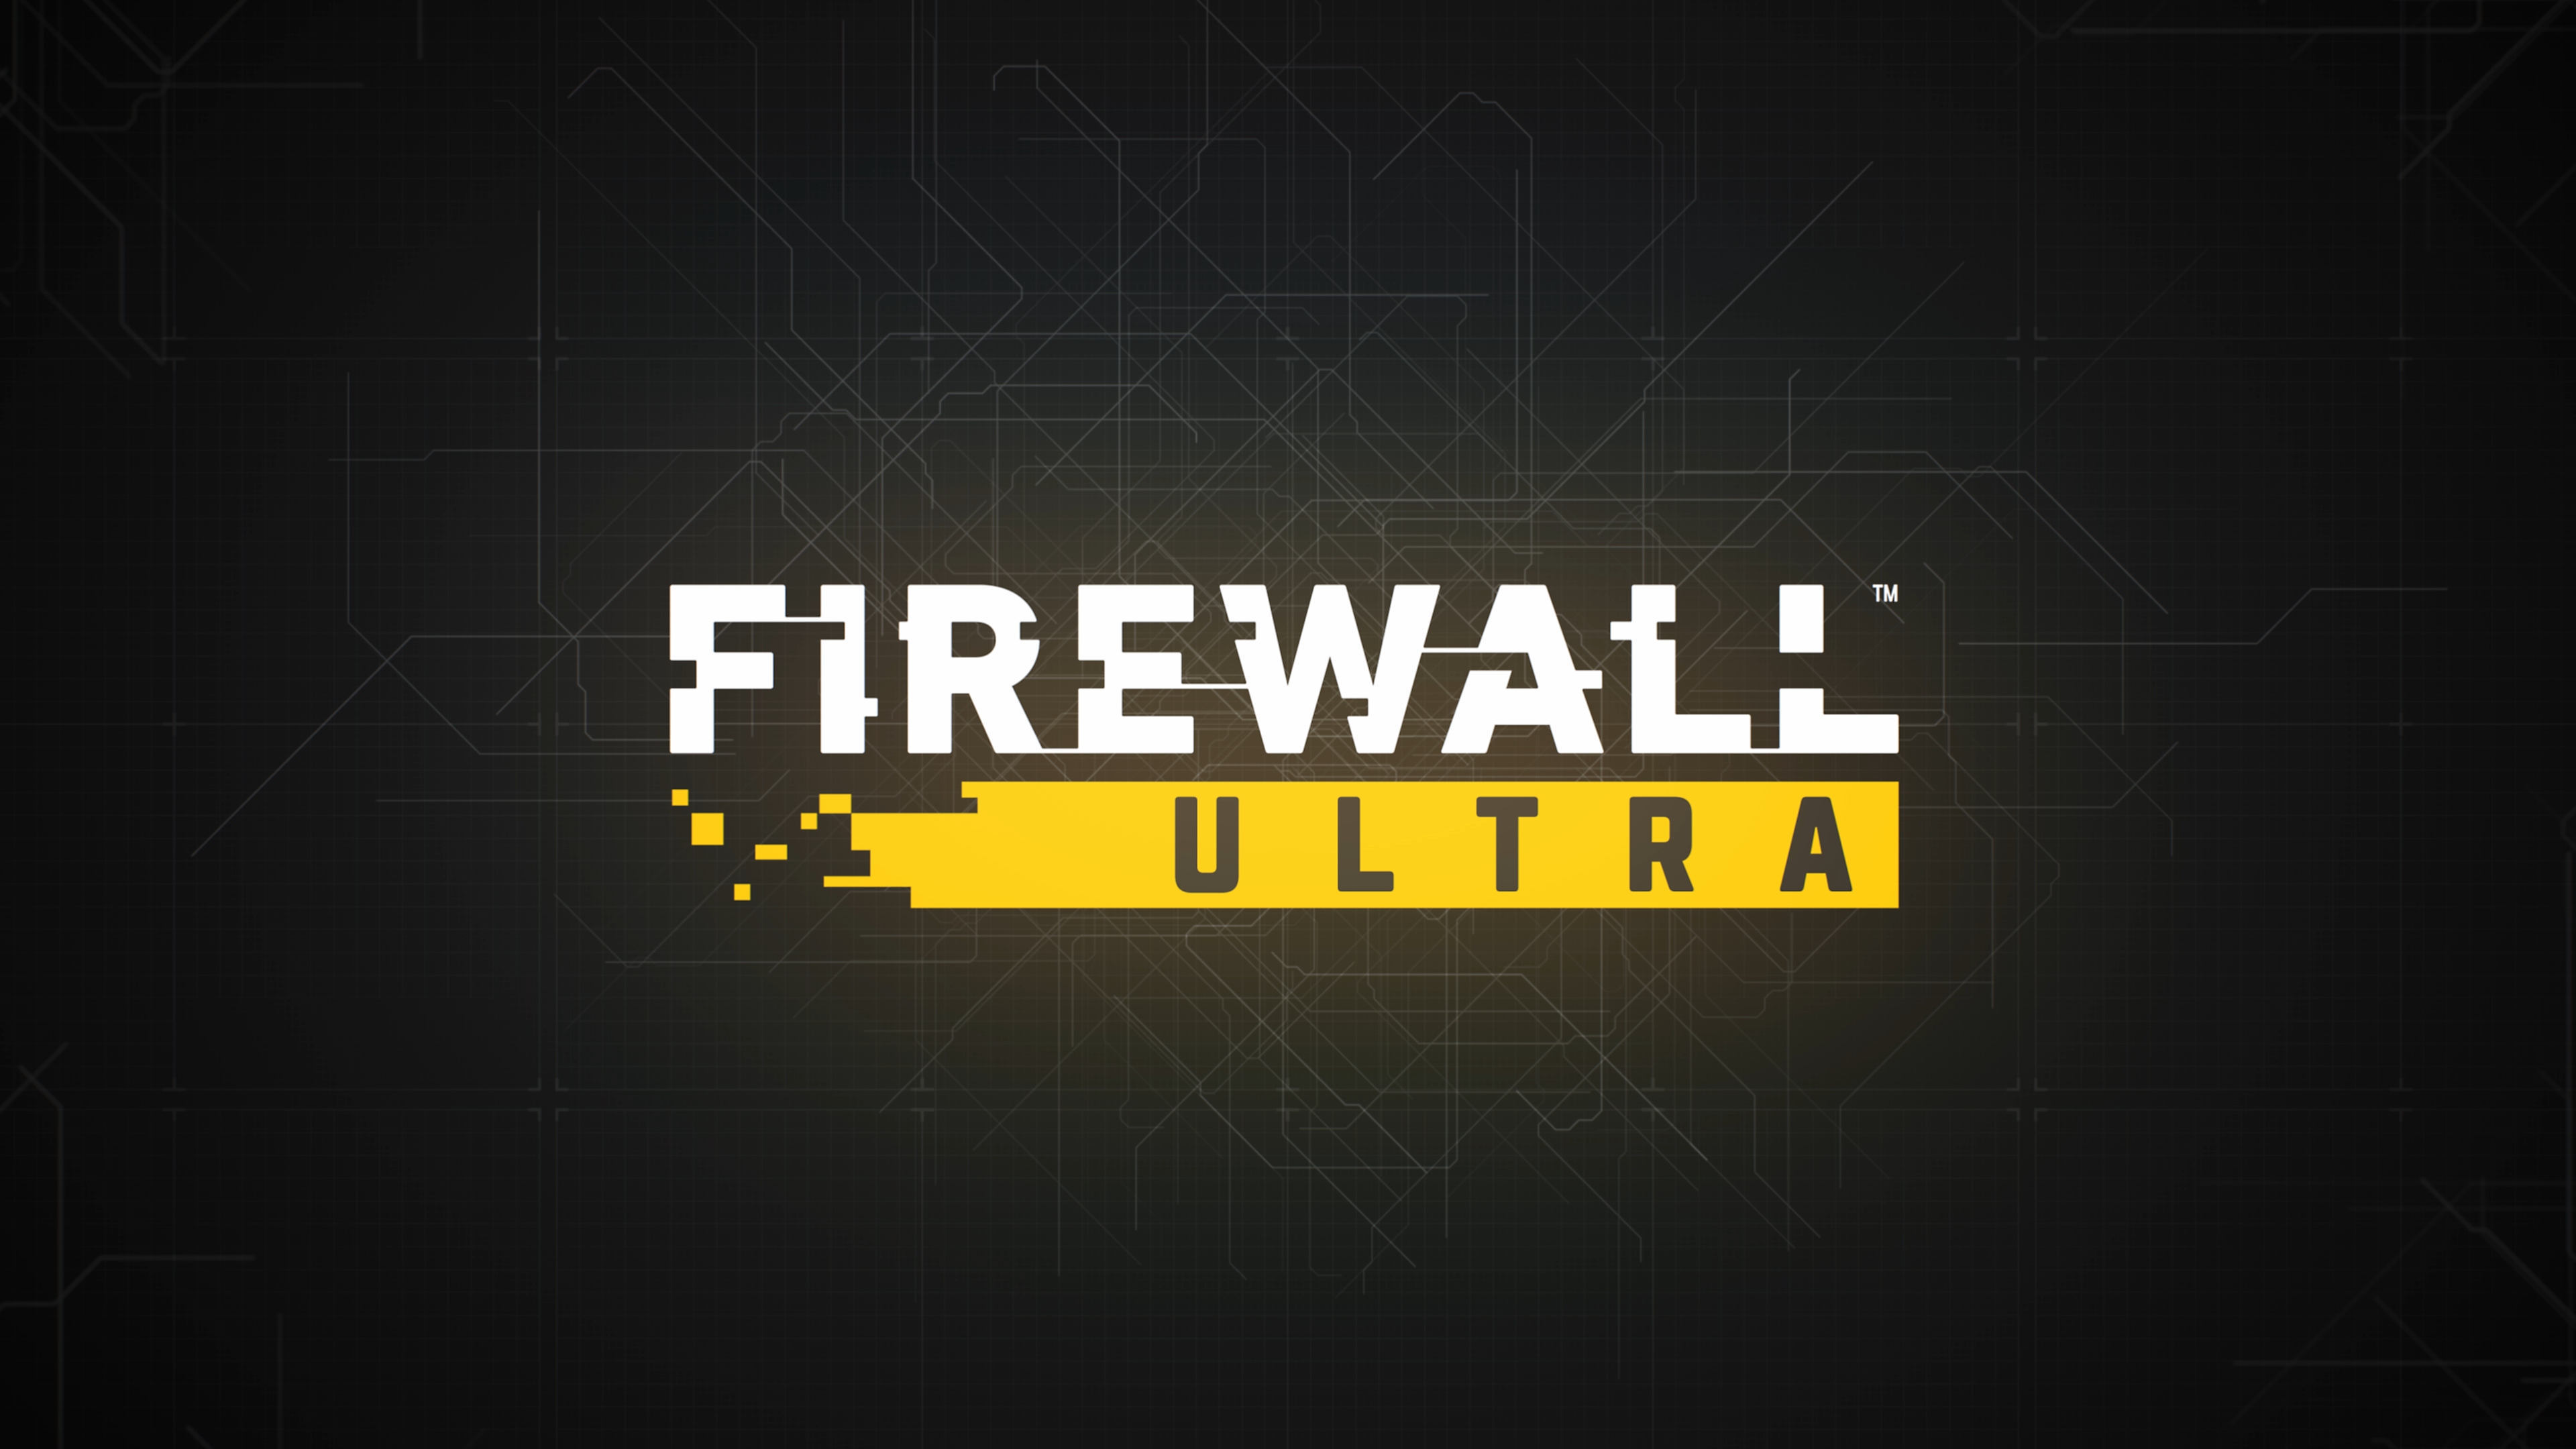 Firewall Ultra - Istantanea della schermata dell'immagine principale